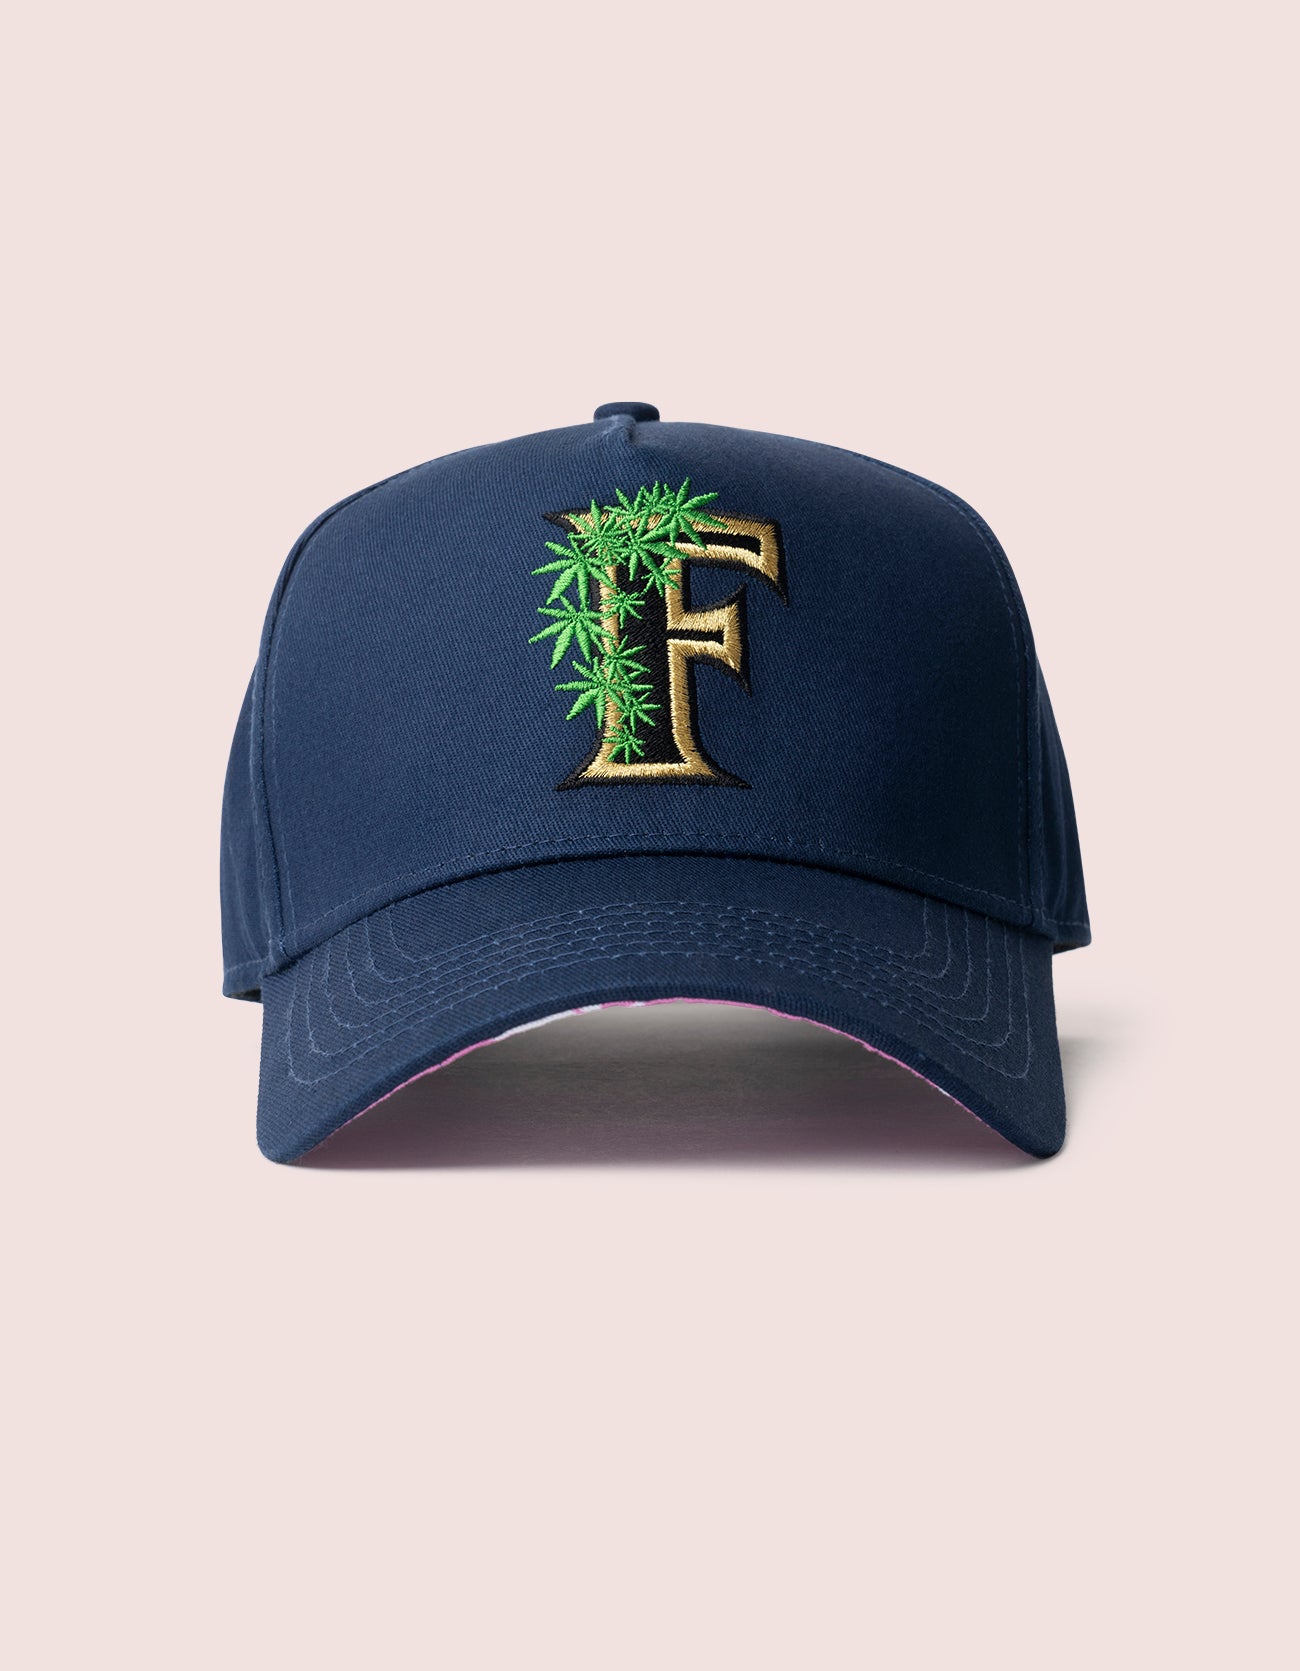 Flee Farms Navy Rockstar Hat